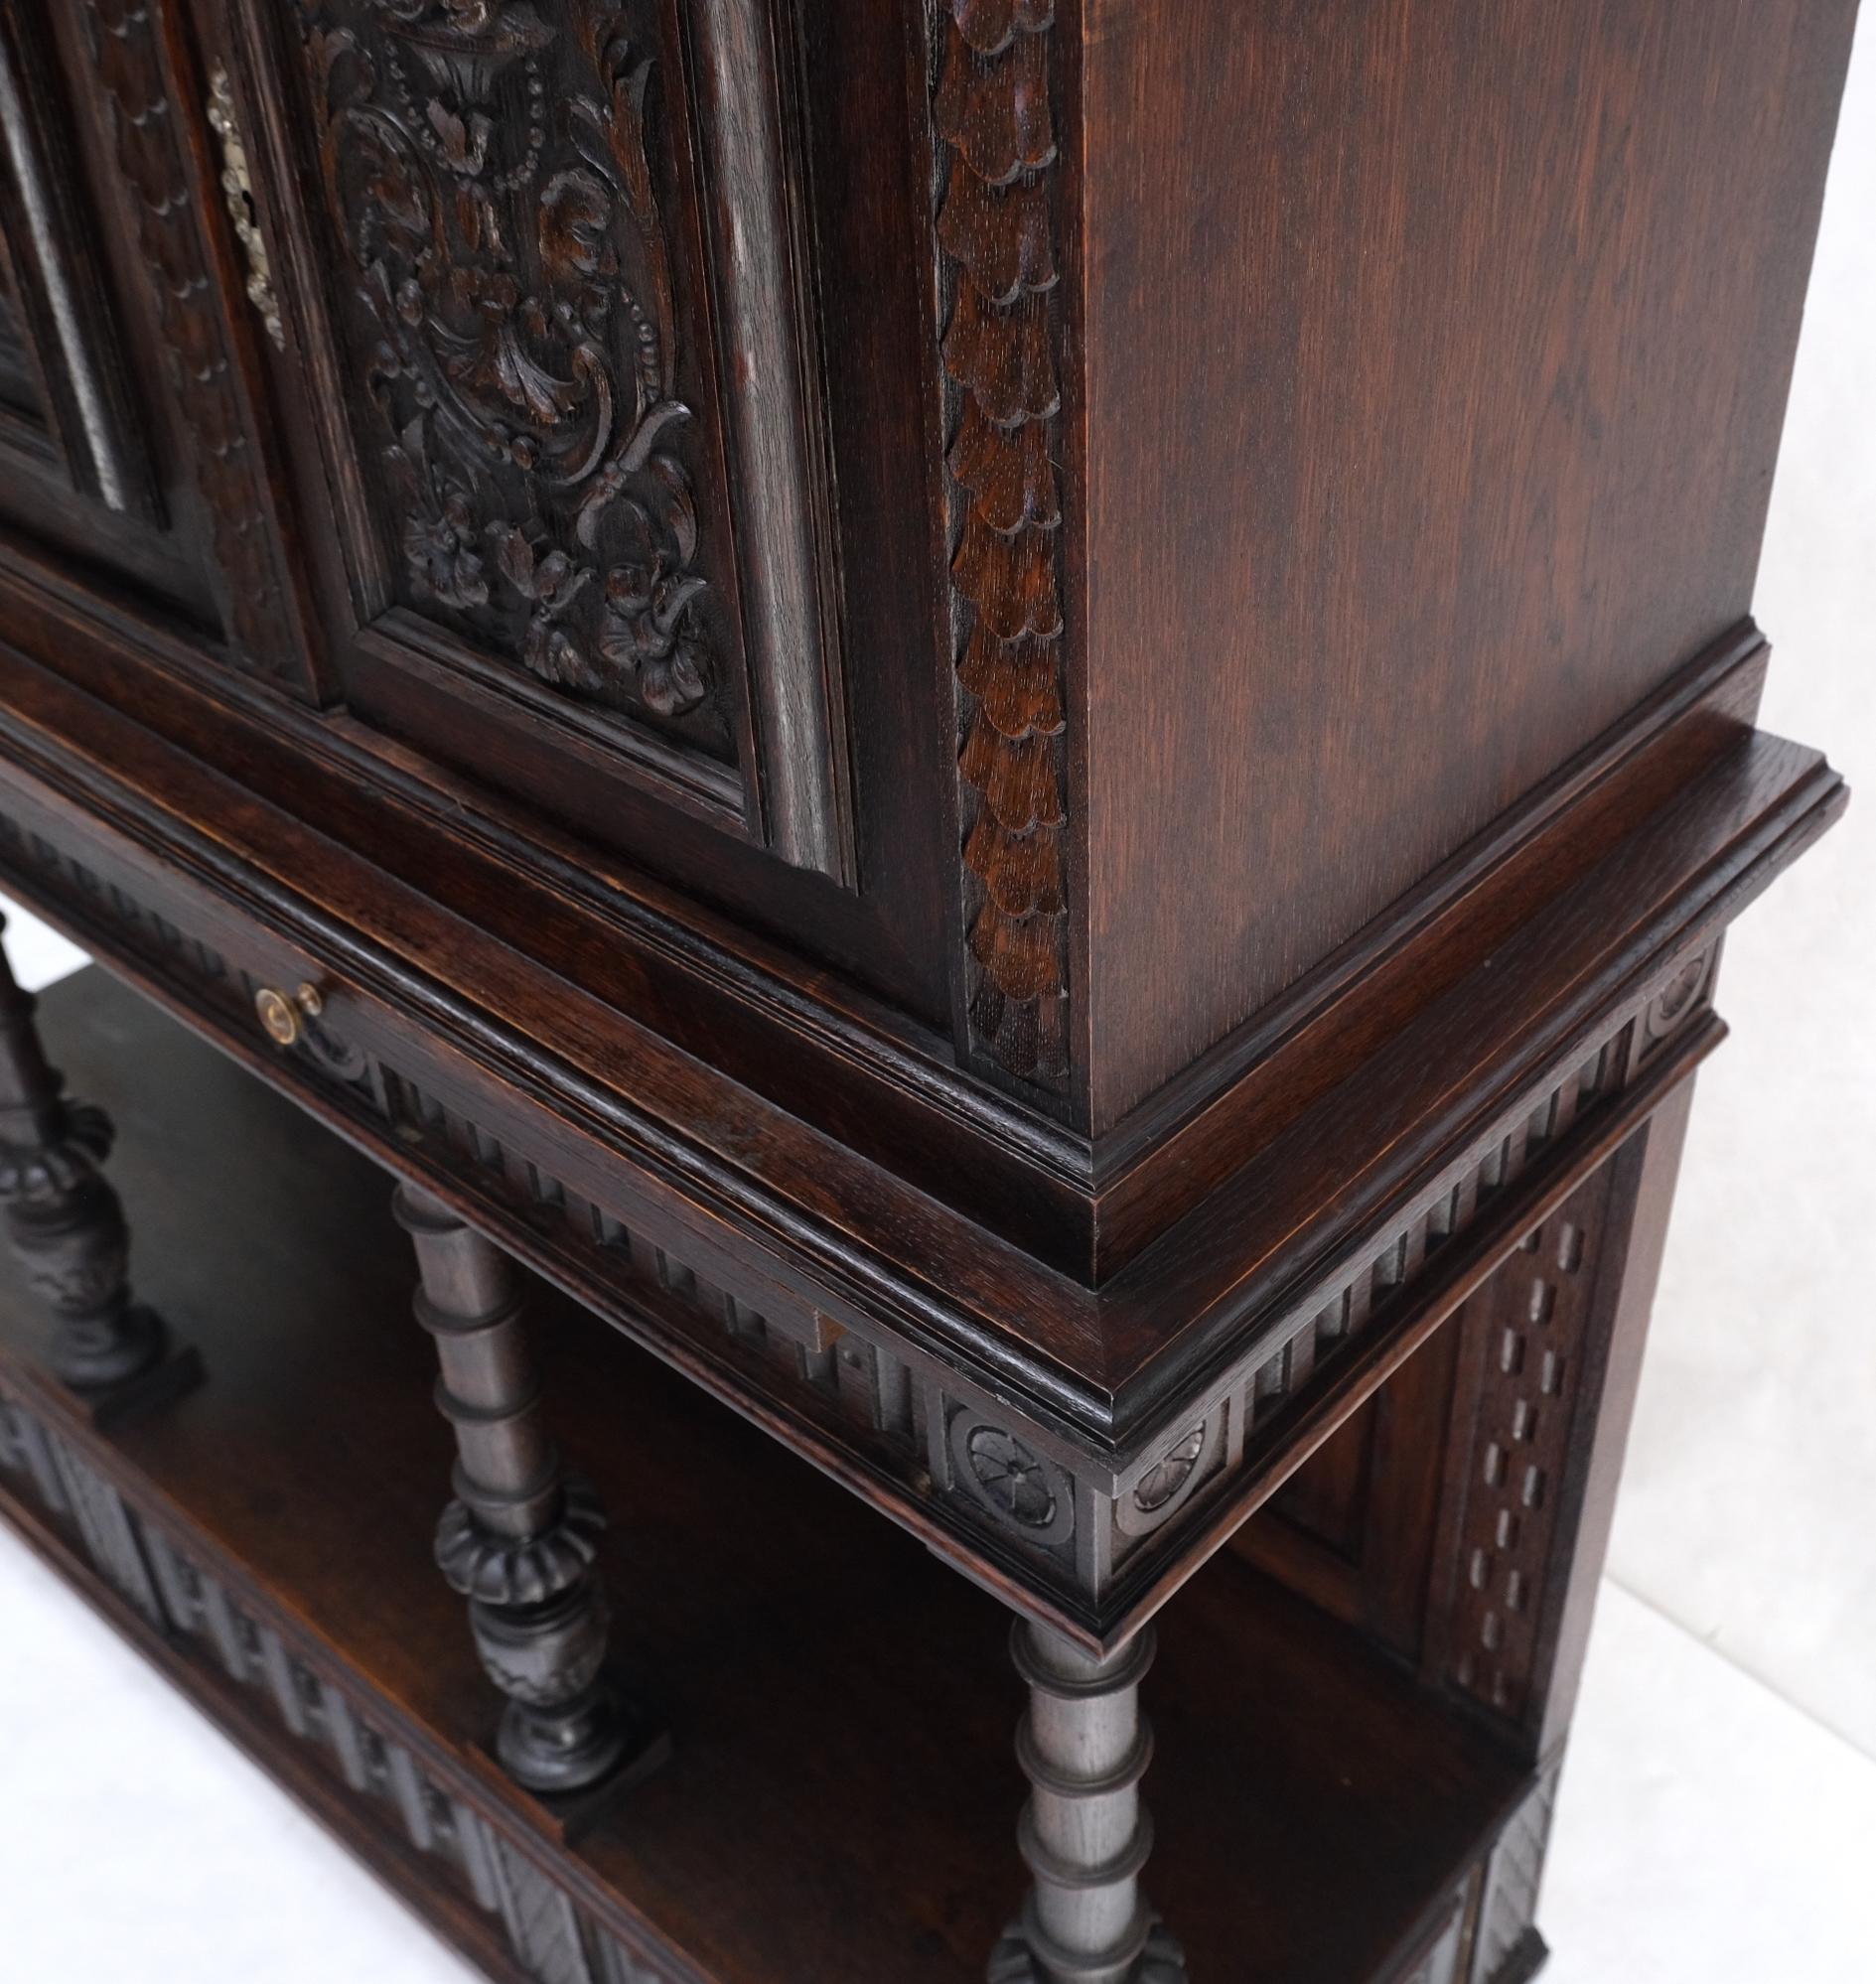 Armoire crédence en chêne sculpté de style jacobéen à 3 portes et tiroirs, mint.
Magnifiques supports en chêne massif tourné.